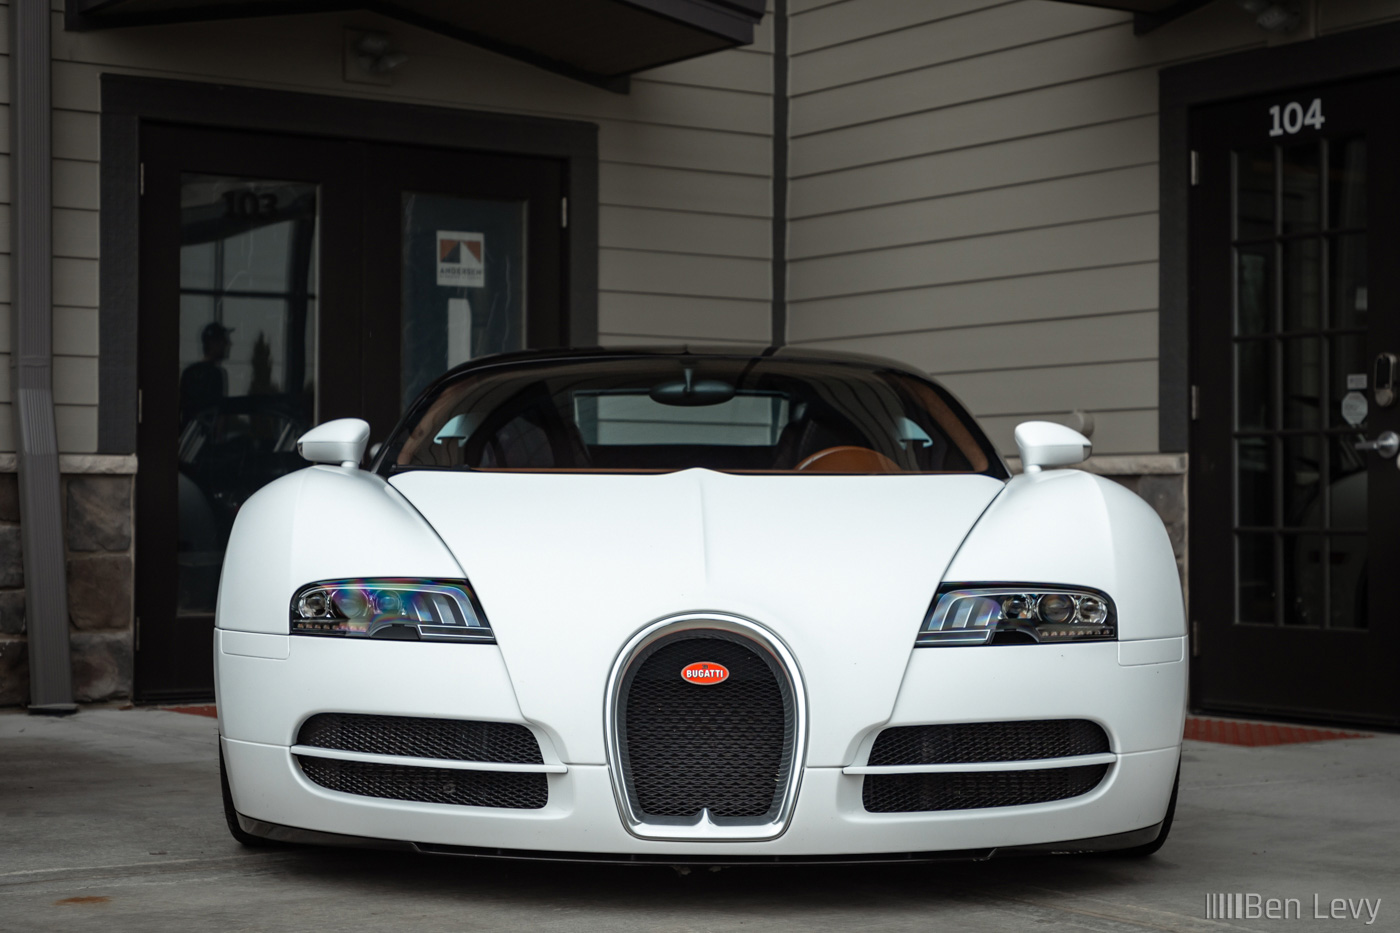 Front of White Bugatti Veyron with The Hamilton Collectiojn